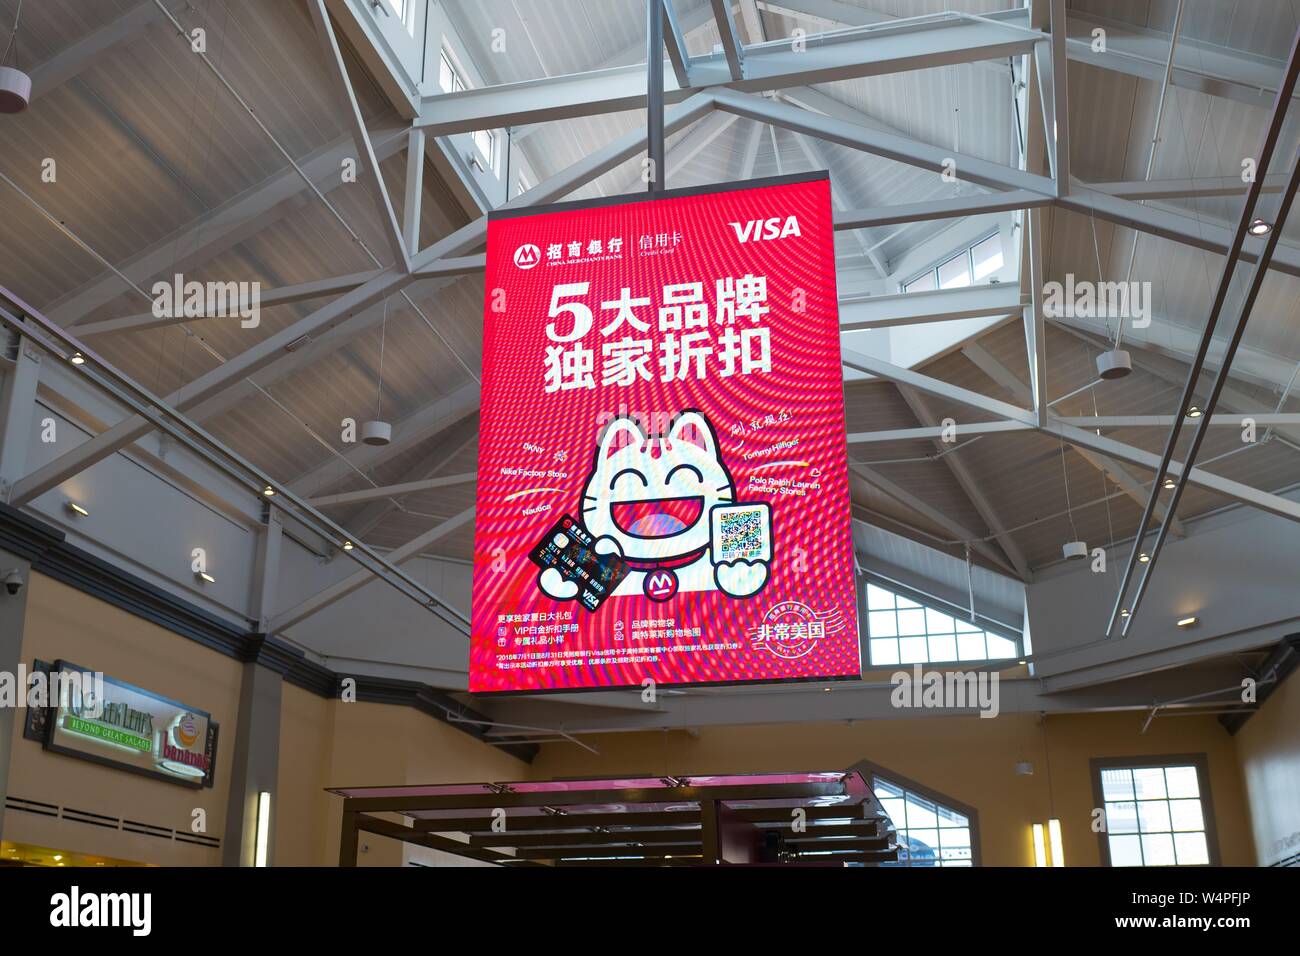 Bei einem Simon Mall Einkaufszentrum in Livermore, Kalifornien, eine Werbung für Visa Kreditkarten ist in Chinesischen, 23. August 2018 angezeigt. Viele Einkaufszentren in der San Francisco Bay Area bieten große asiatische Bevölkerung der Region. () Stockfoto